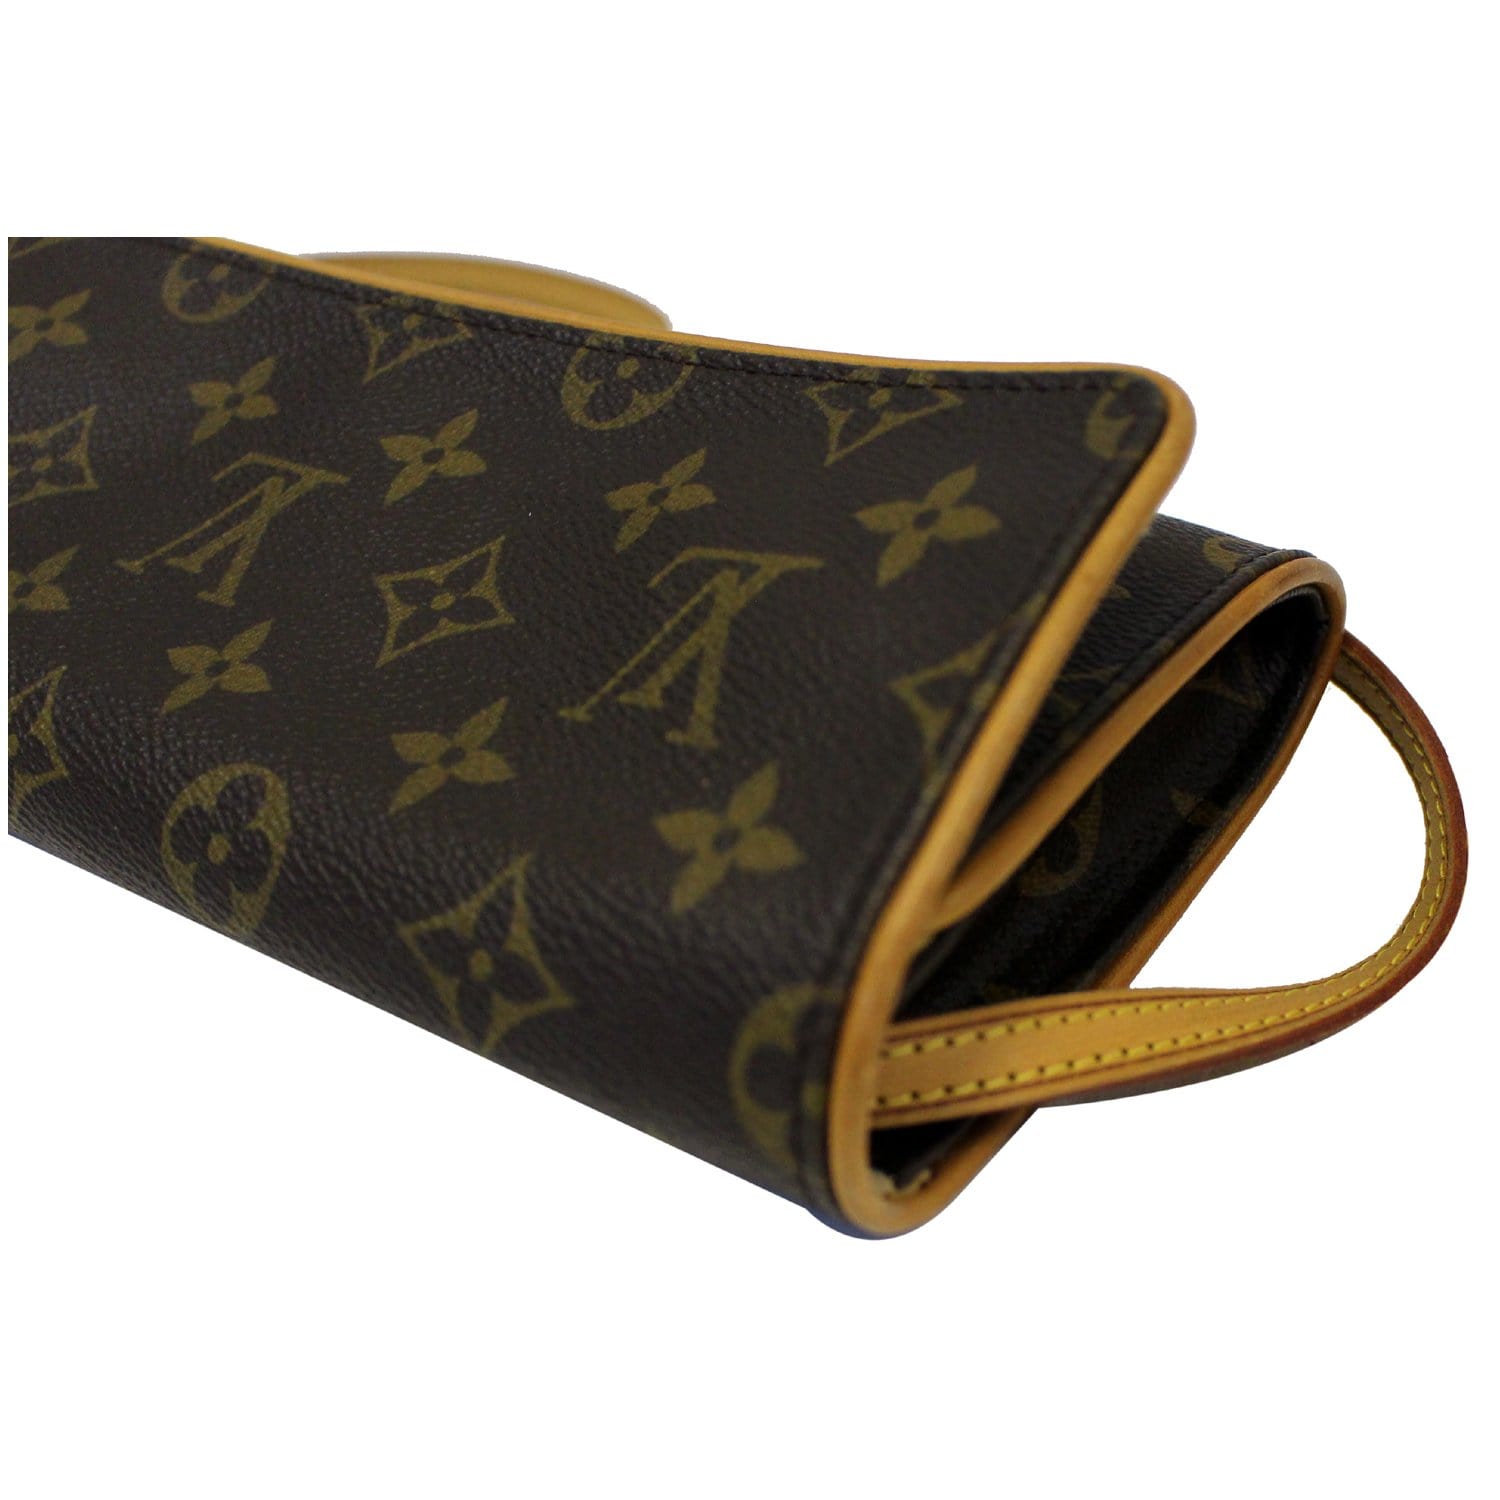 Louis Vuitton Pochette Twin GM Monogram Canvas Shoulder Bag at